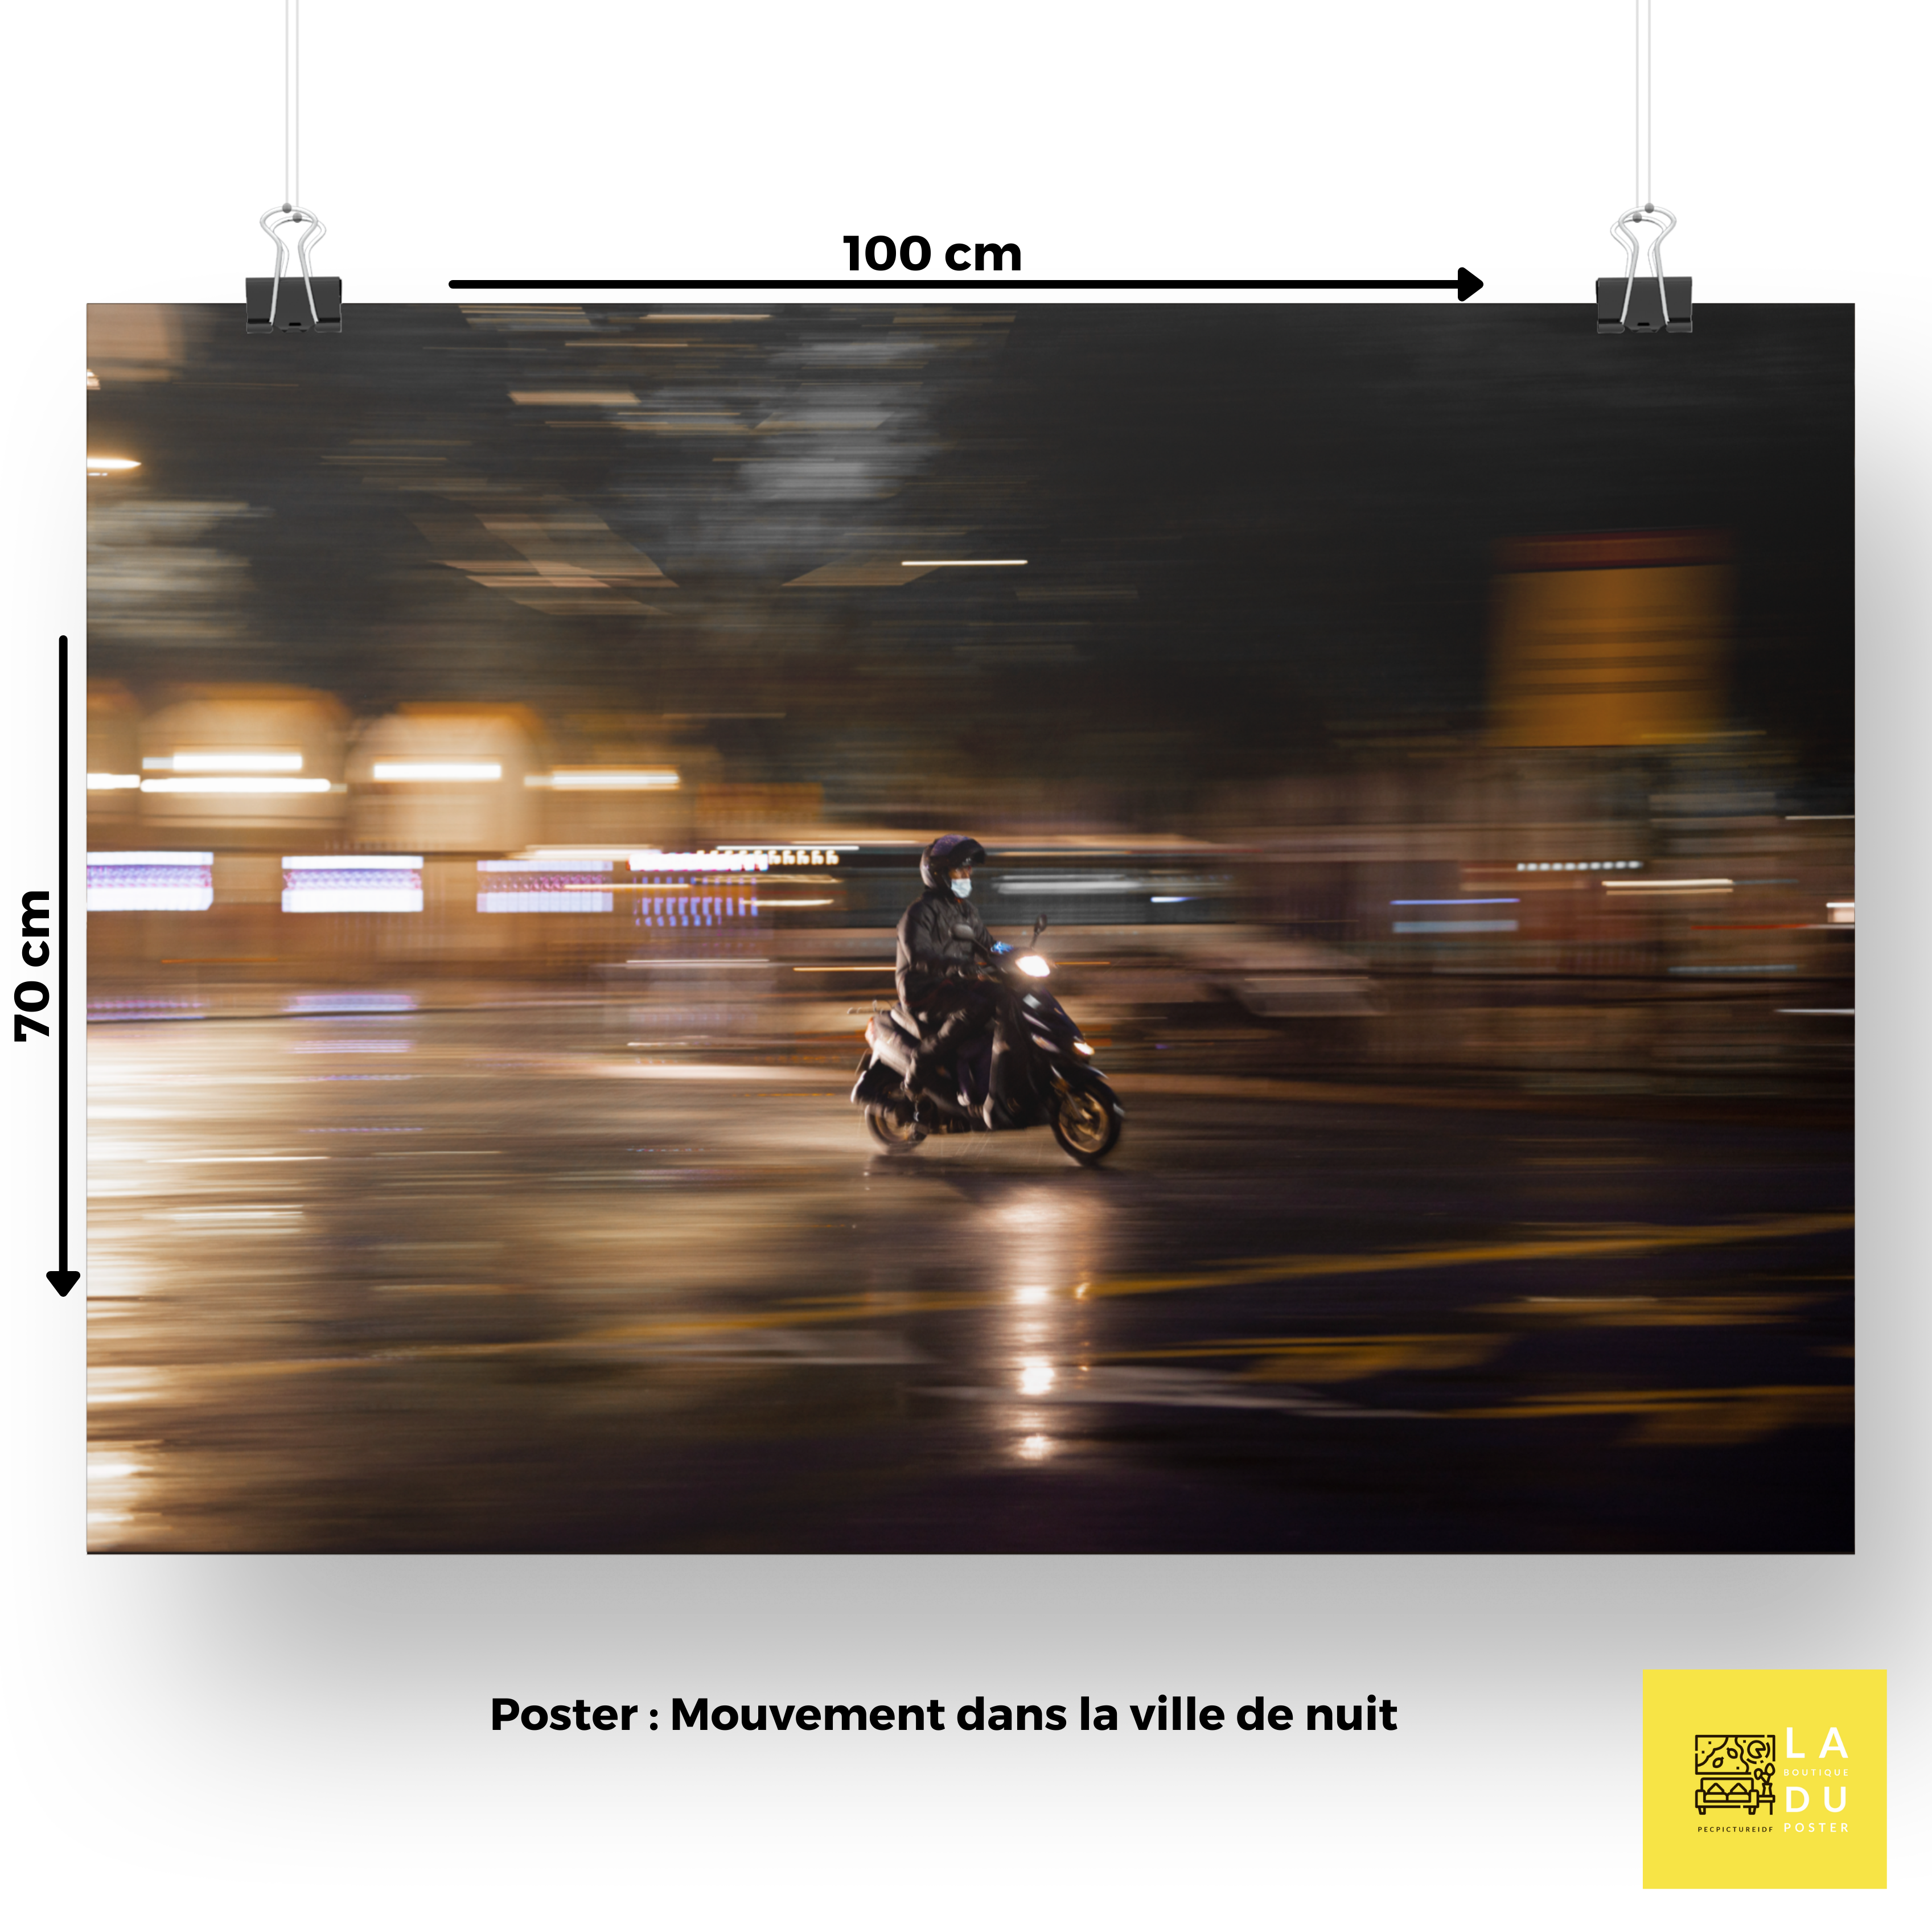 Mouvement dans la ville de nuit - Poster - La boutique du poster Français